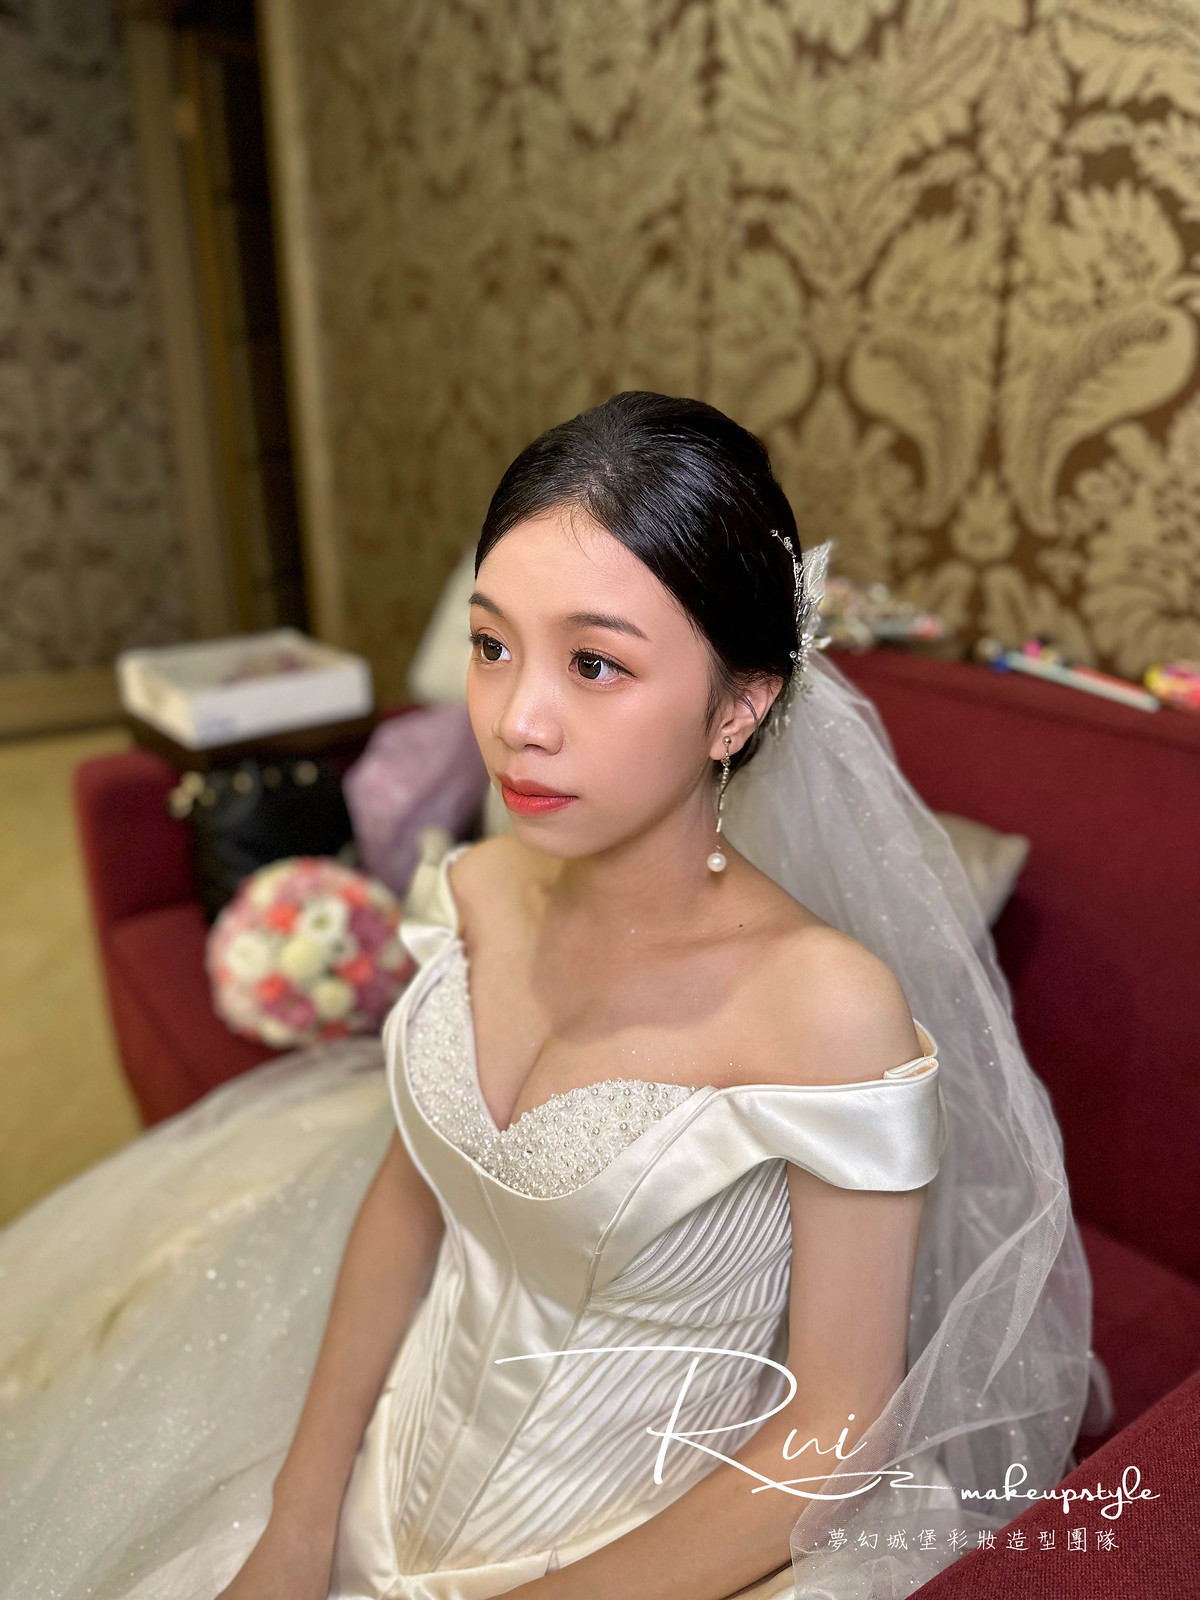 【新秘Rui】bride思辰 結婚造型 / 甜美仙女